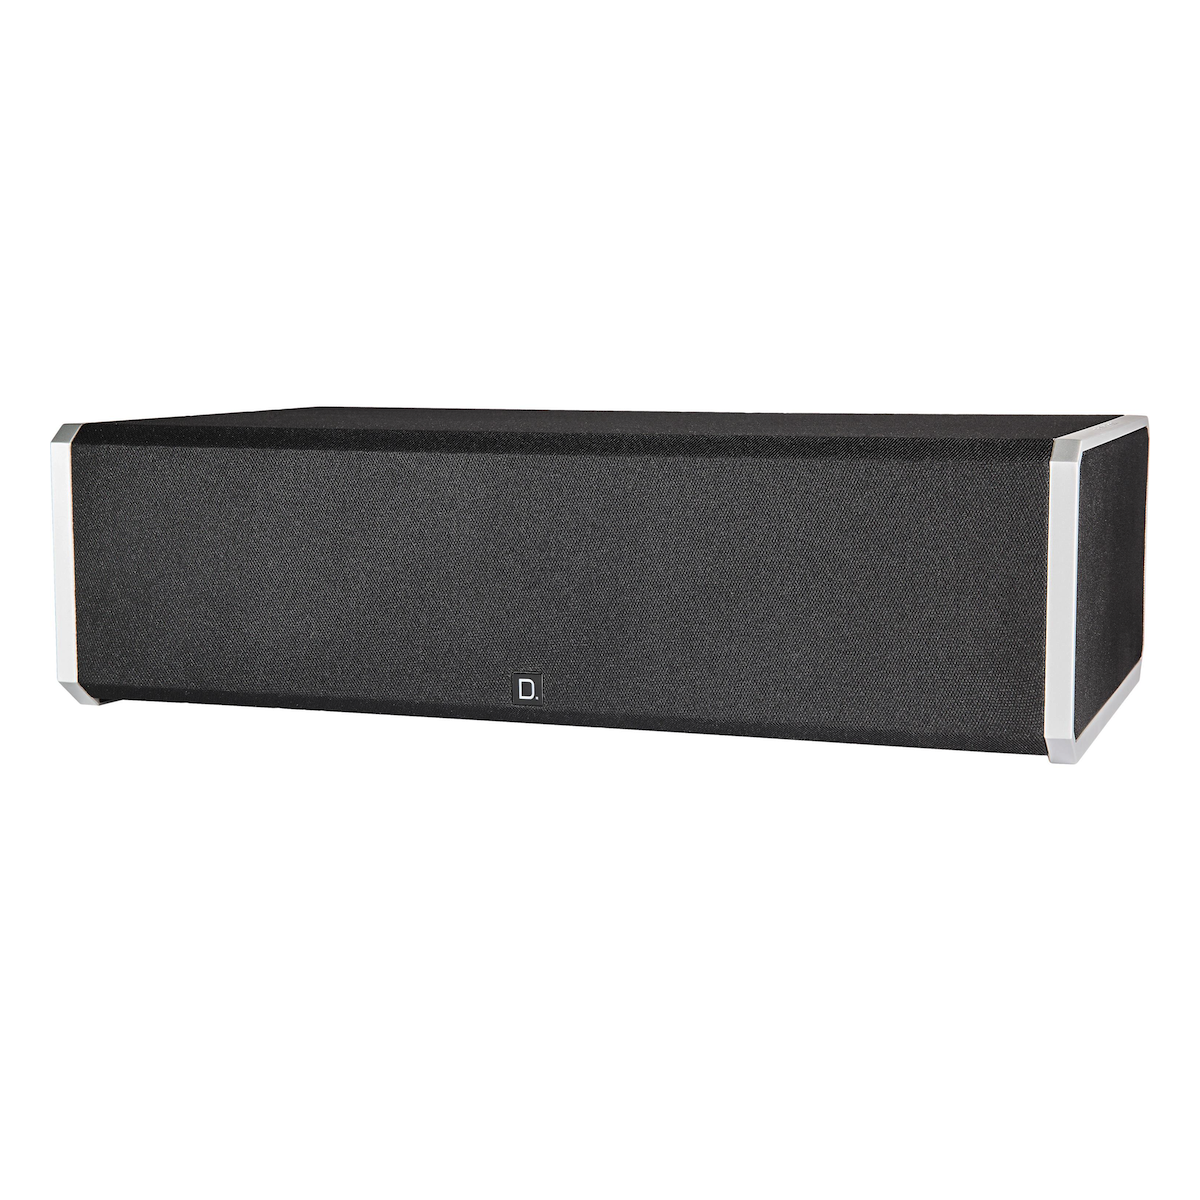 Definitive Technology CS9060 - Center Channel Speaker - AVStore